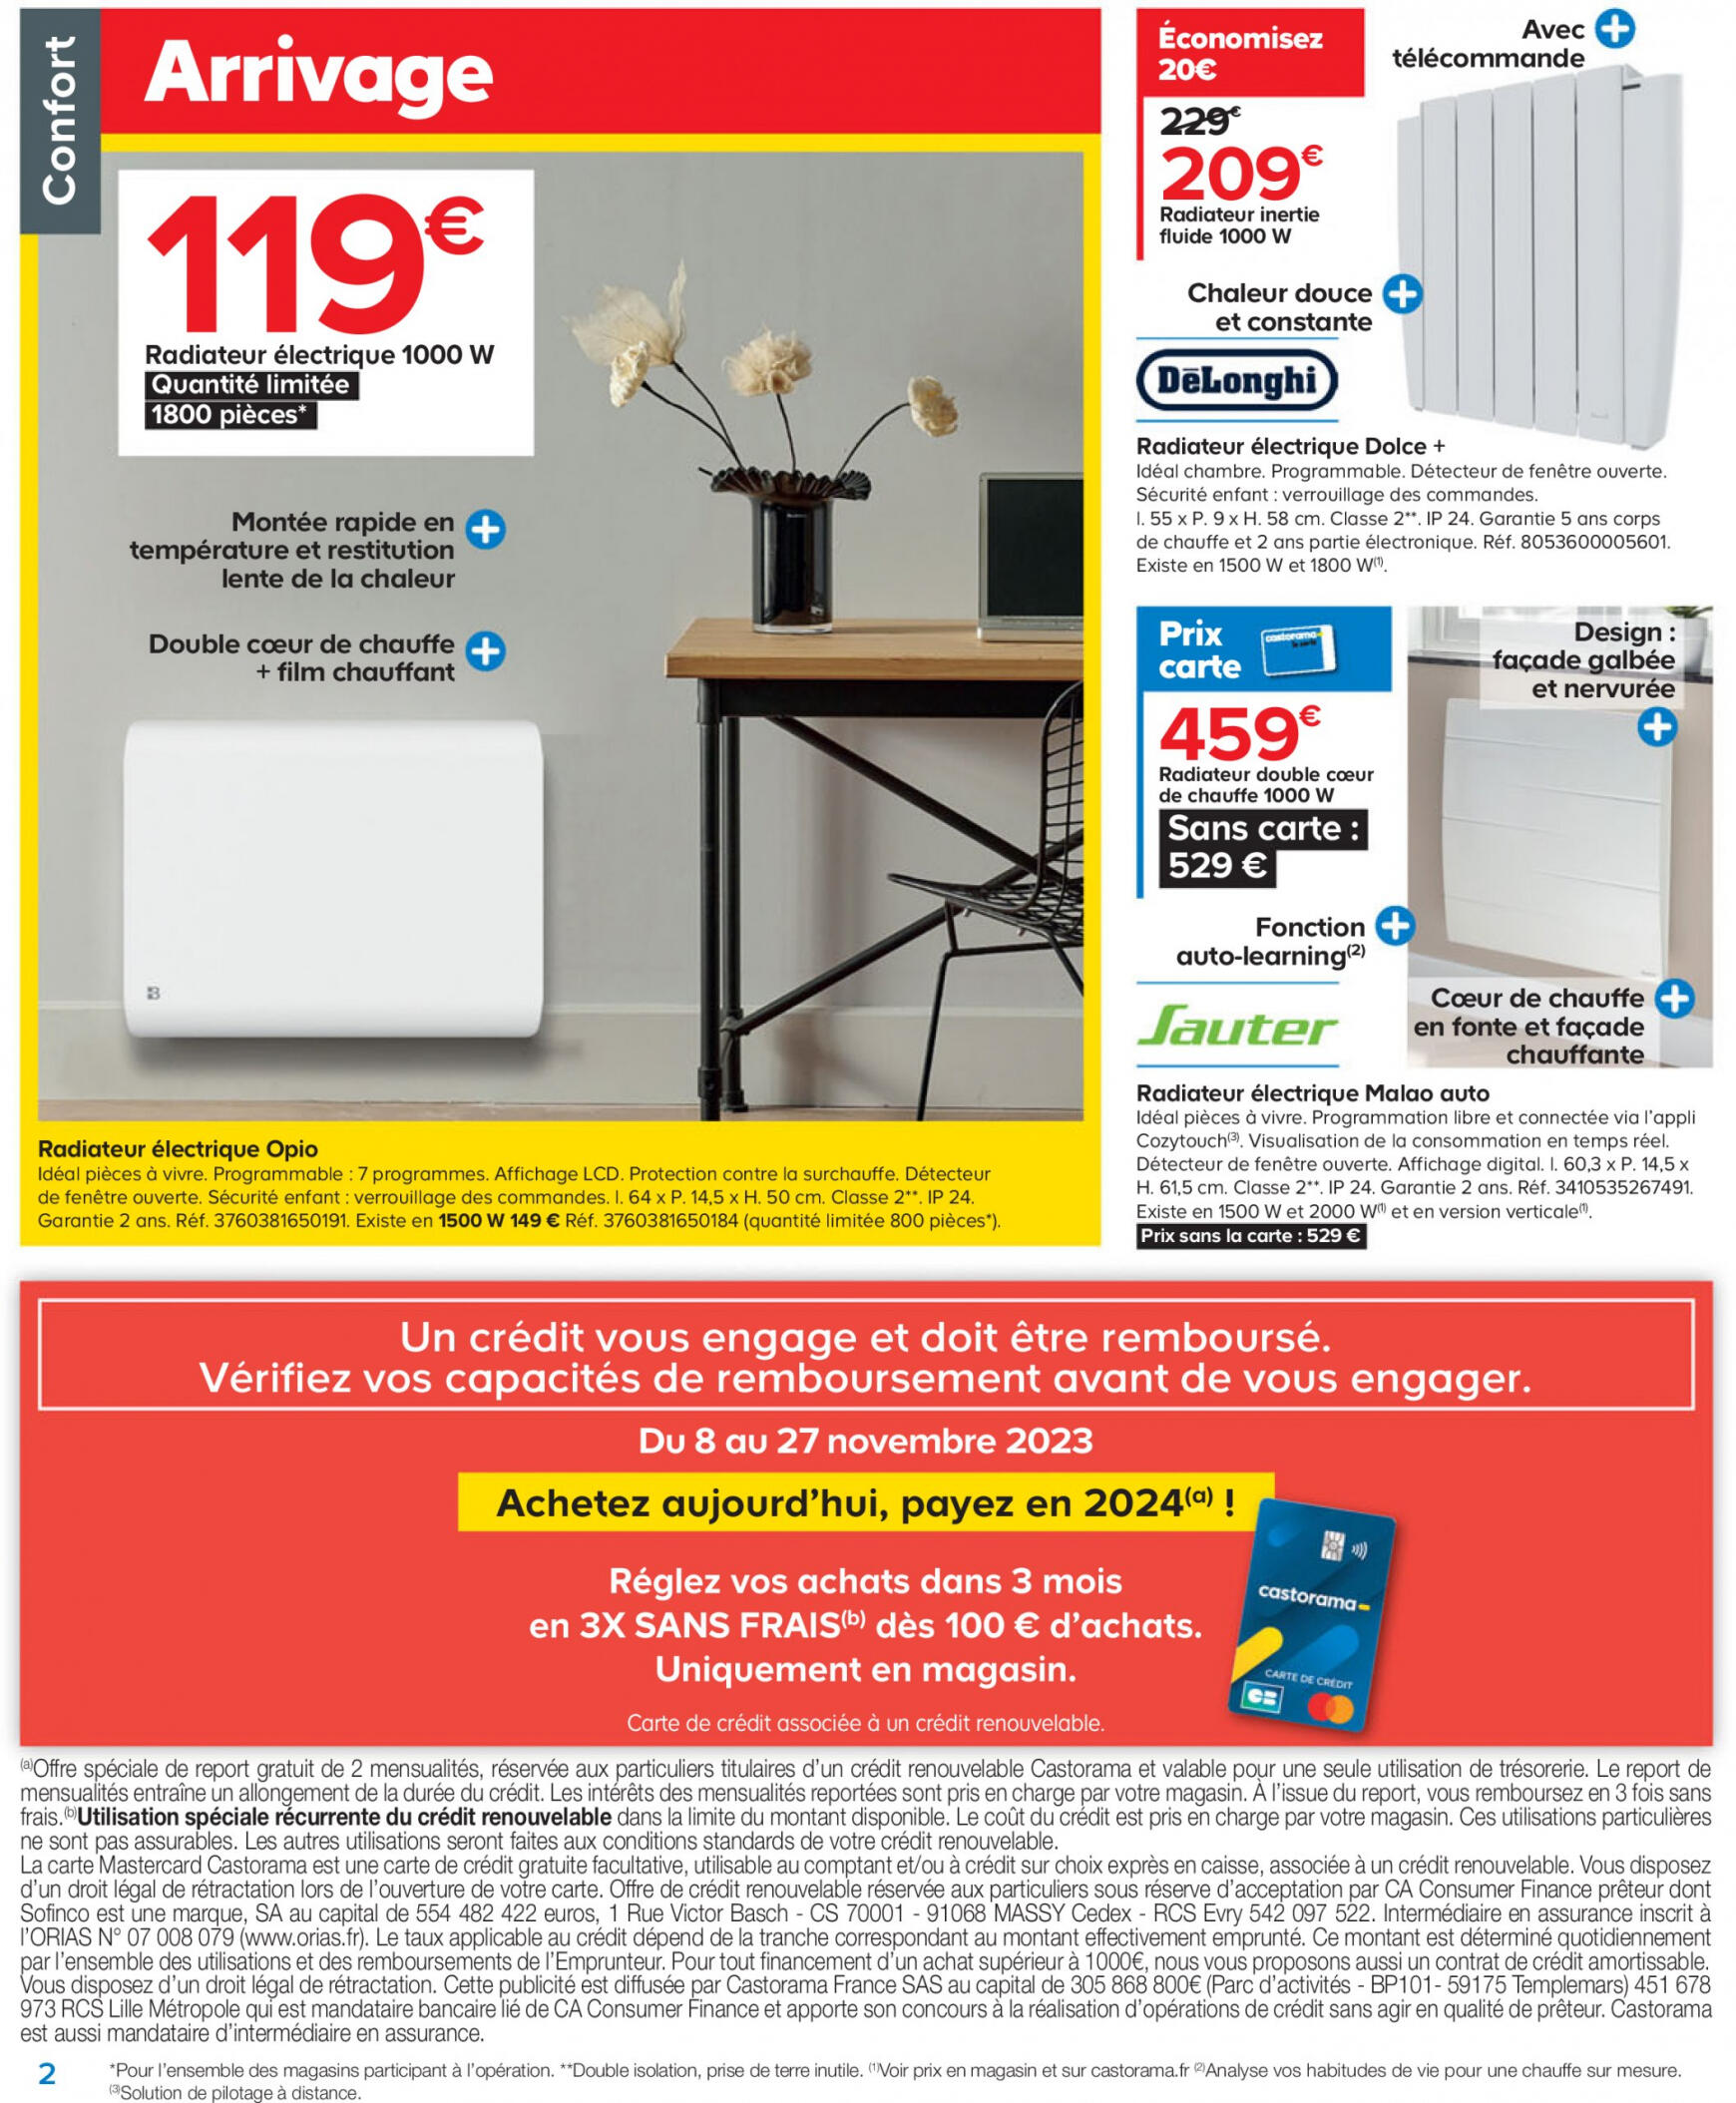 castorama - Catalogue Castorama de du mercredi 08.11. - page: 2